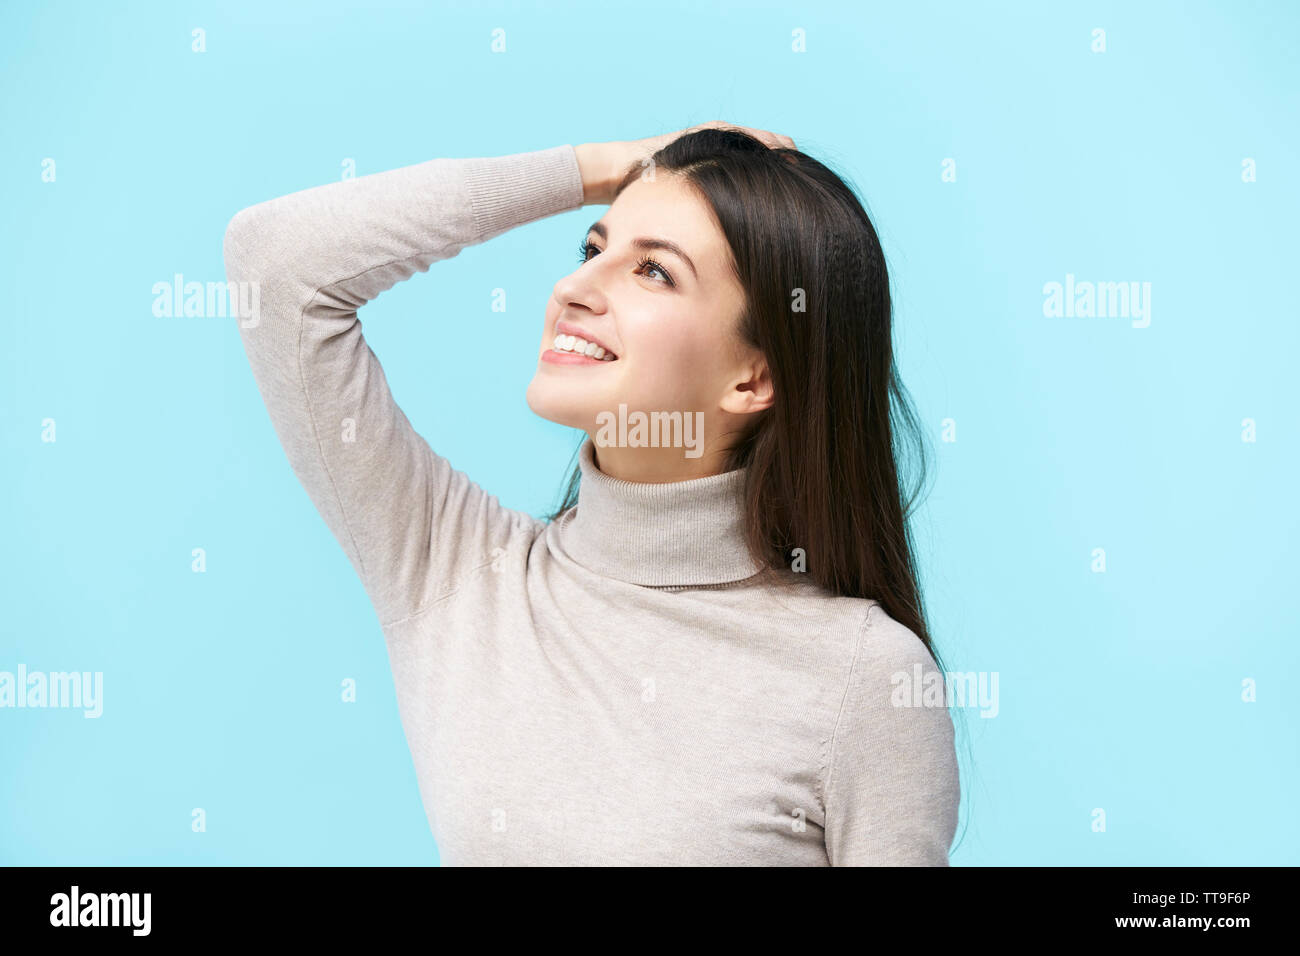 Schönen jungen kaukasischen Frau suchen und lächelnd die Hand auf die Stirn, auf blauem Hintergrund isoliert Stockfoto